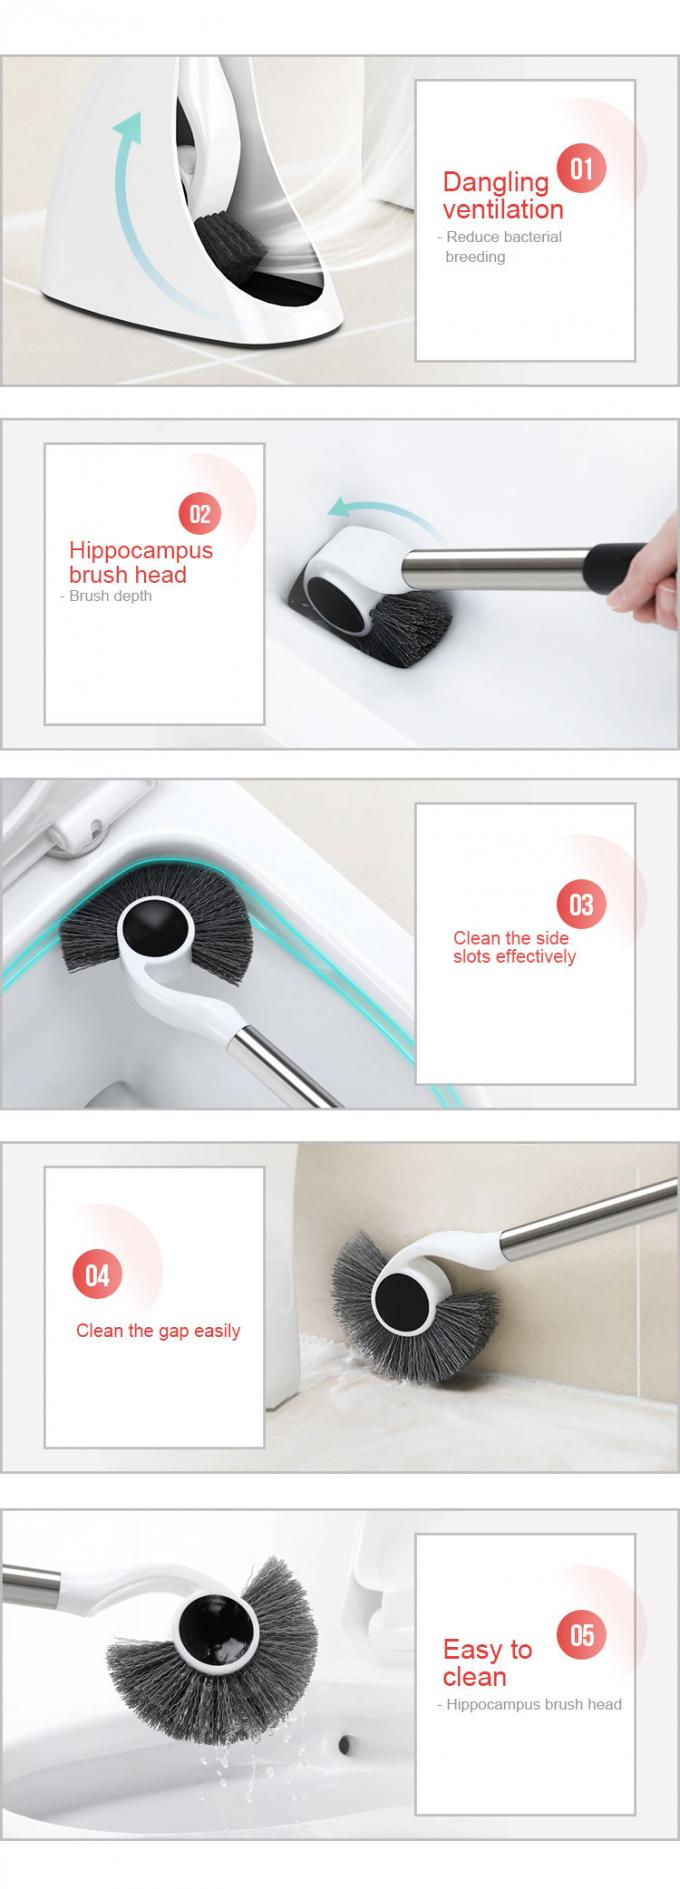 Cepillo moderno limpio fácil del retrete del cuarto de baño de la descontaminación fuerte